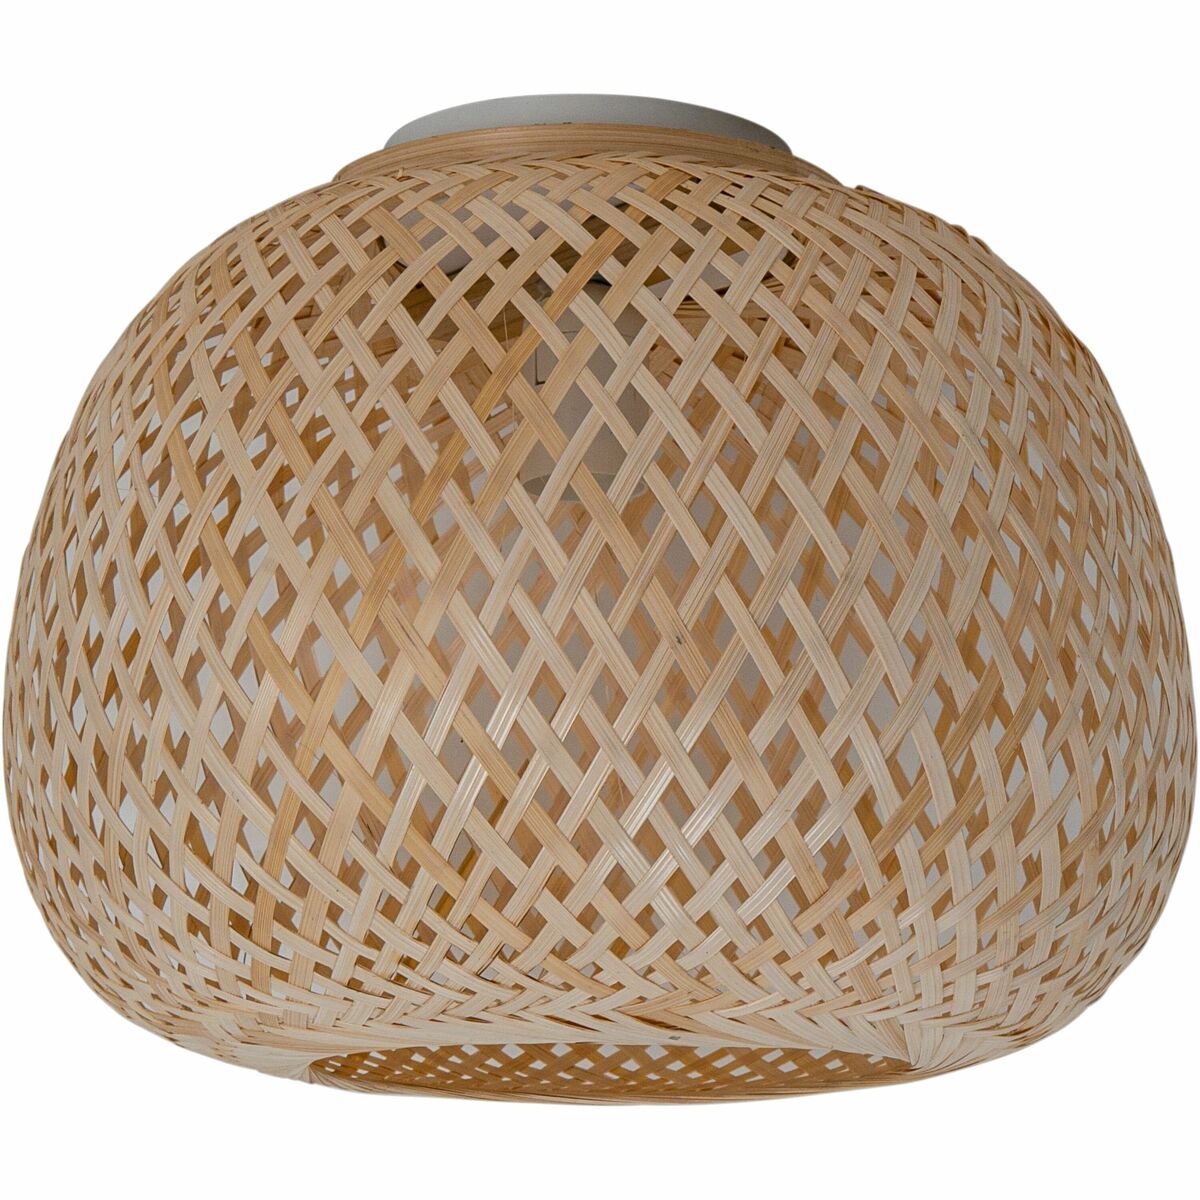 Lampa sufitowa Vanilla bambus E27 Inspire